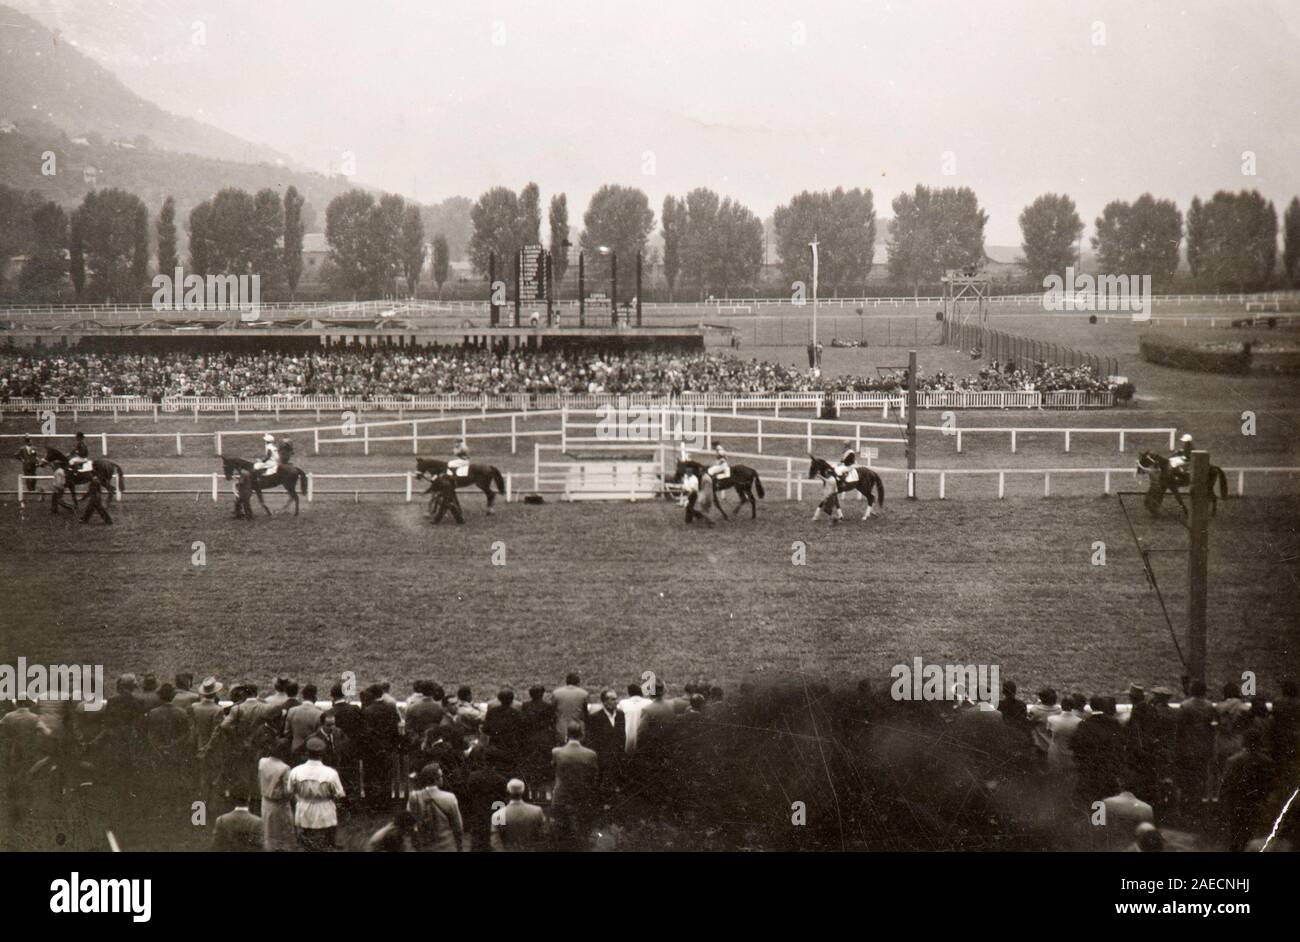 A horse race in Merano (Italy, 1956) Stock Photo